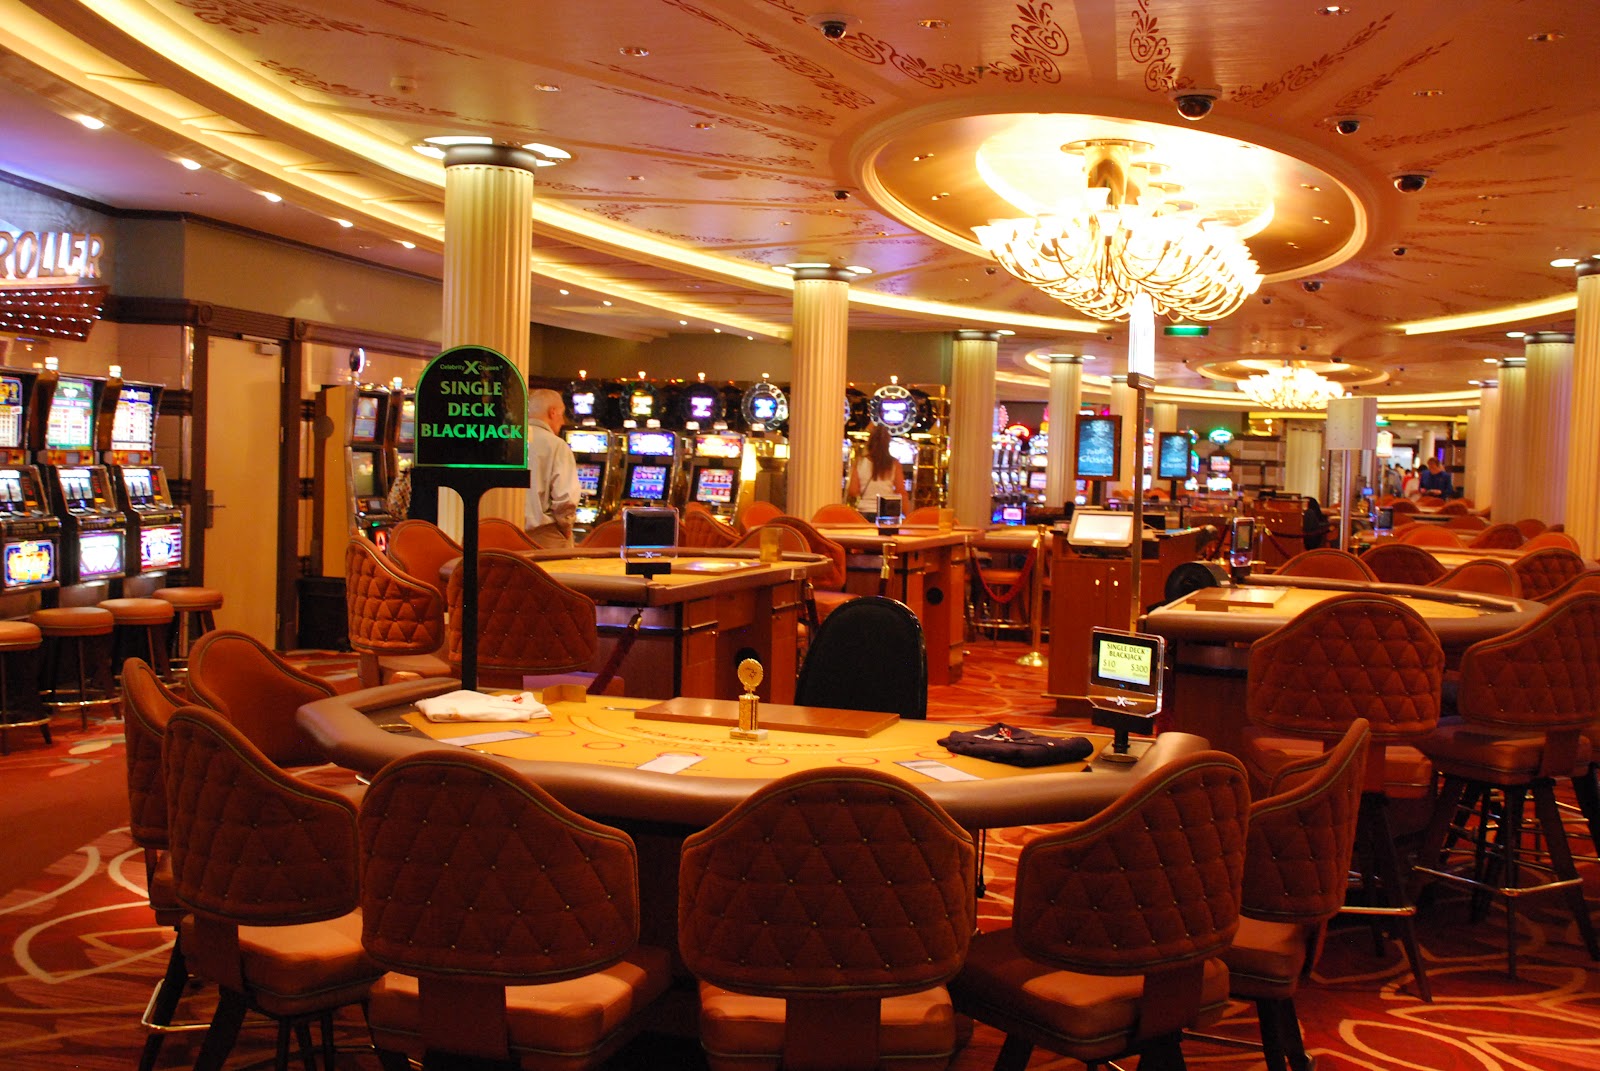 Eclipse Casino - FR Gambling, Casino